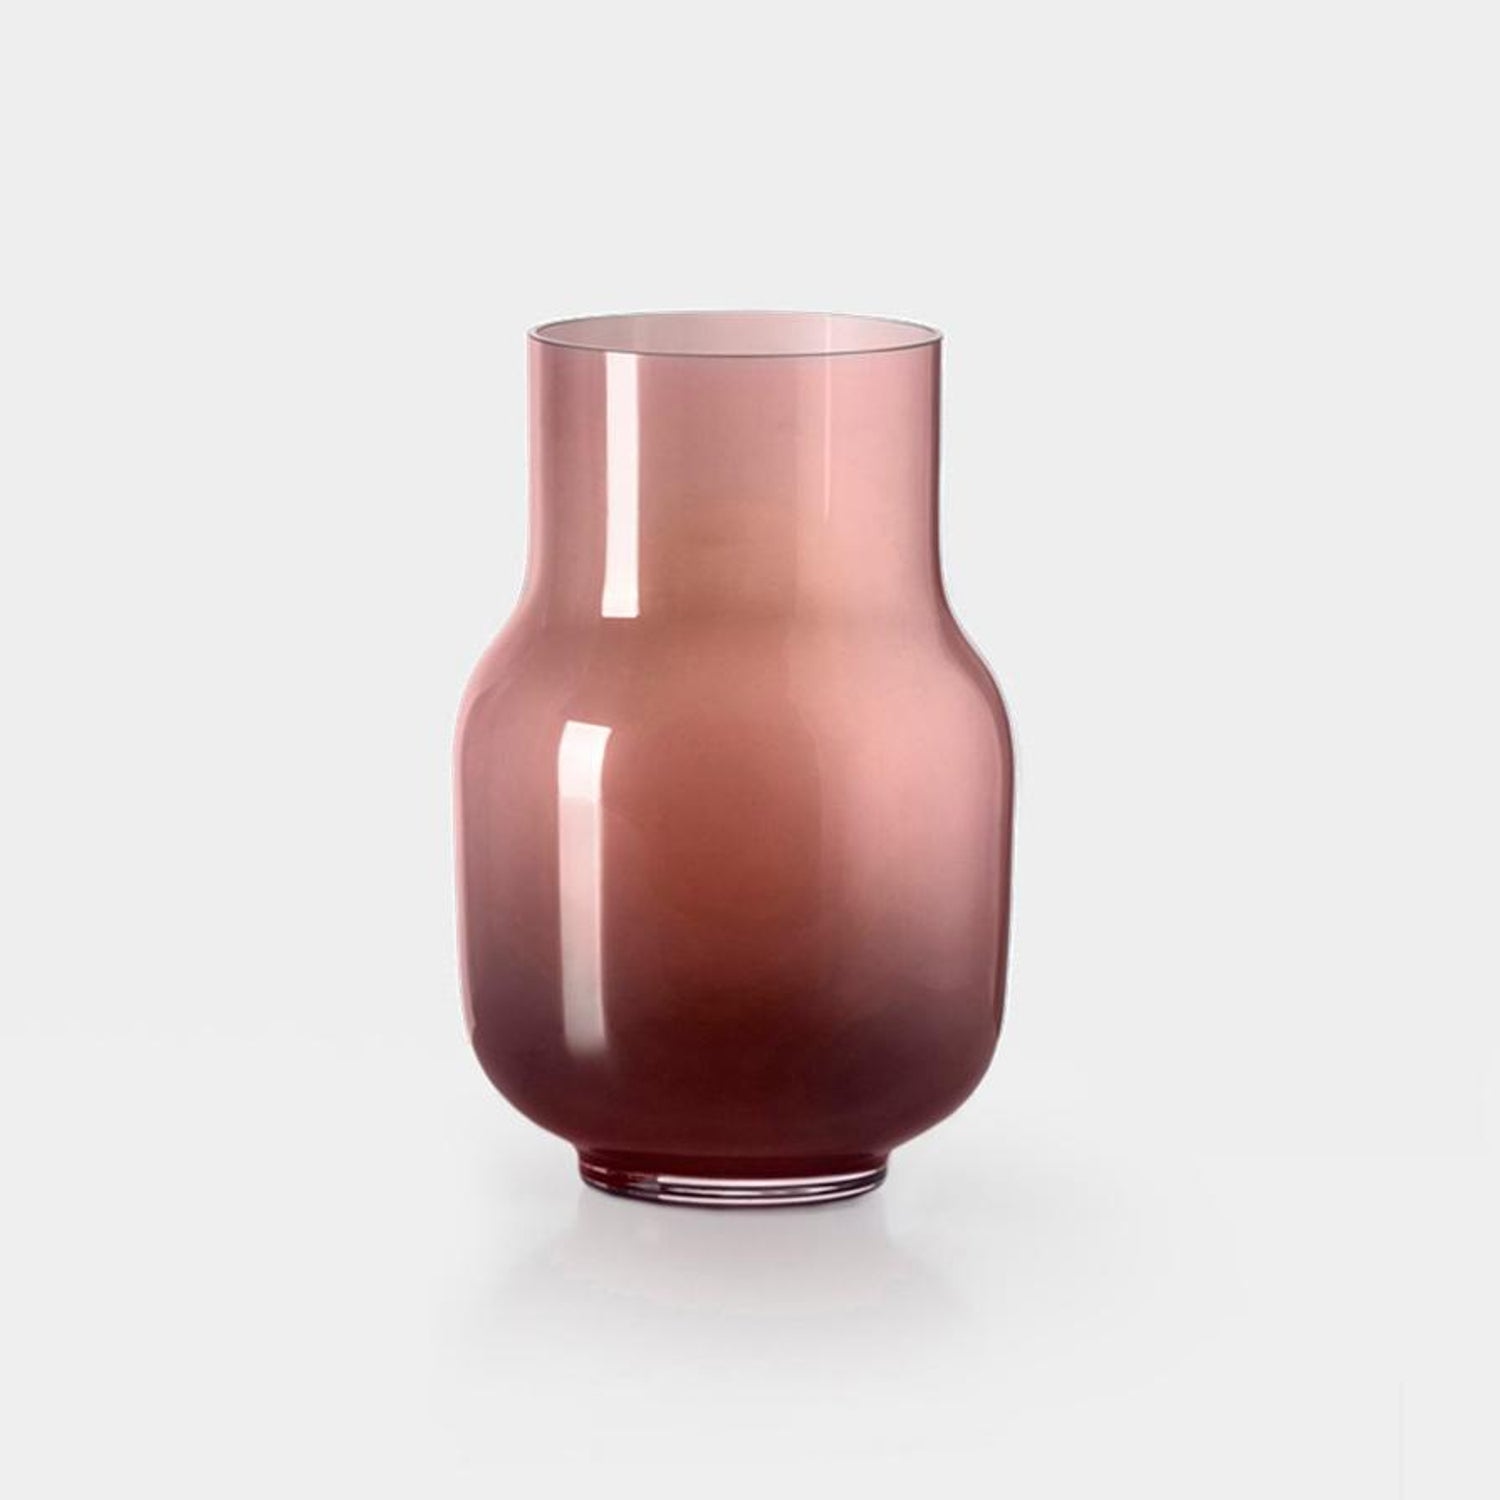 Big Vase19 by Dechem Studio For Sale at 1stDibs